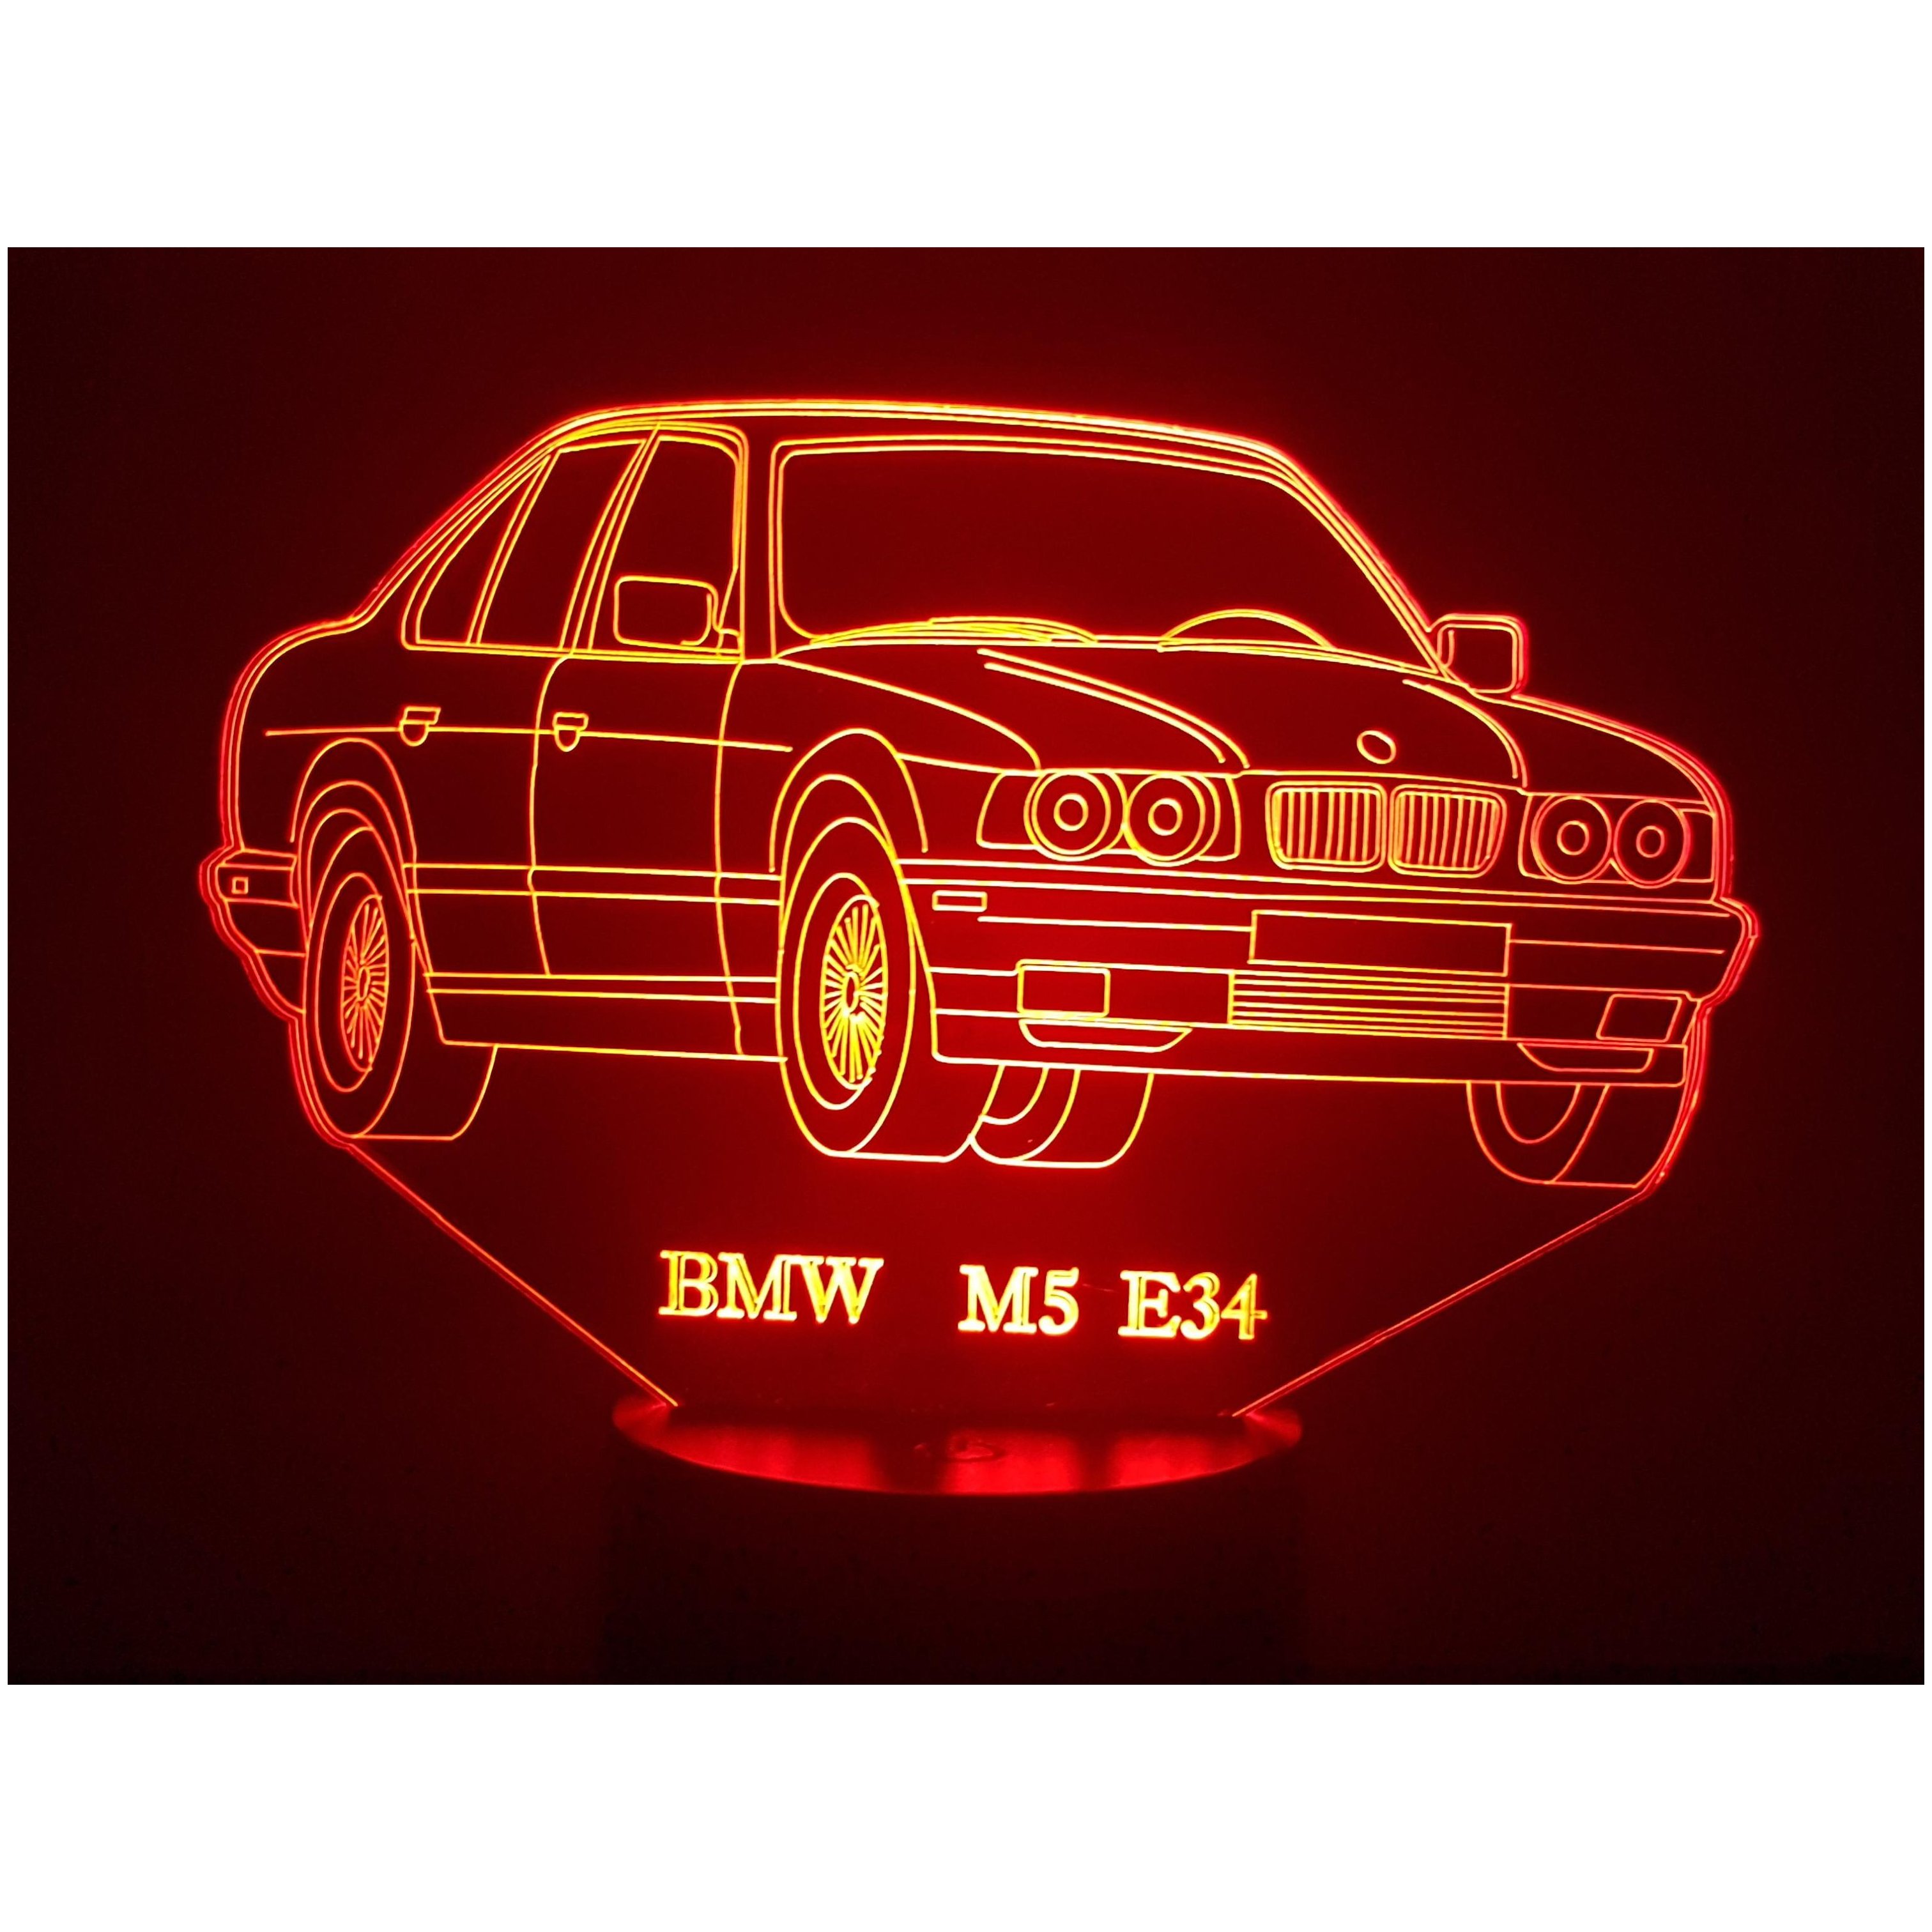 BMW M5 E34 - Lampe d'ambiance 3D à leds, gravure laser sur acrylique,  alimentation par piles ou câble USB